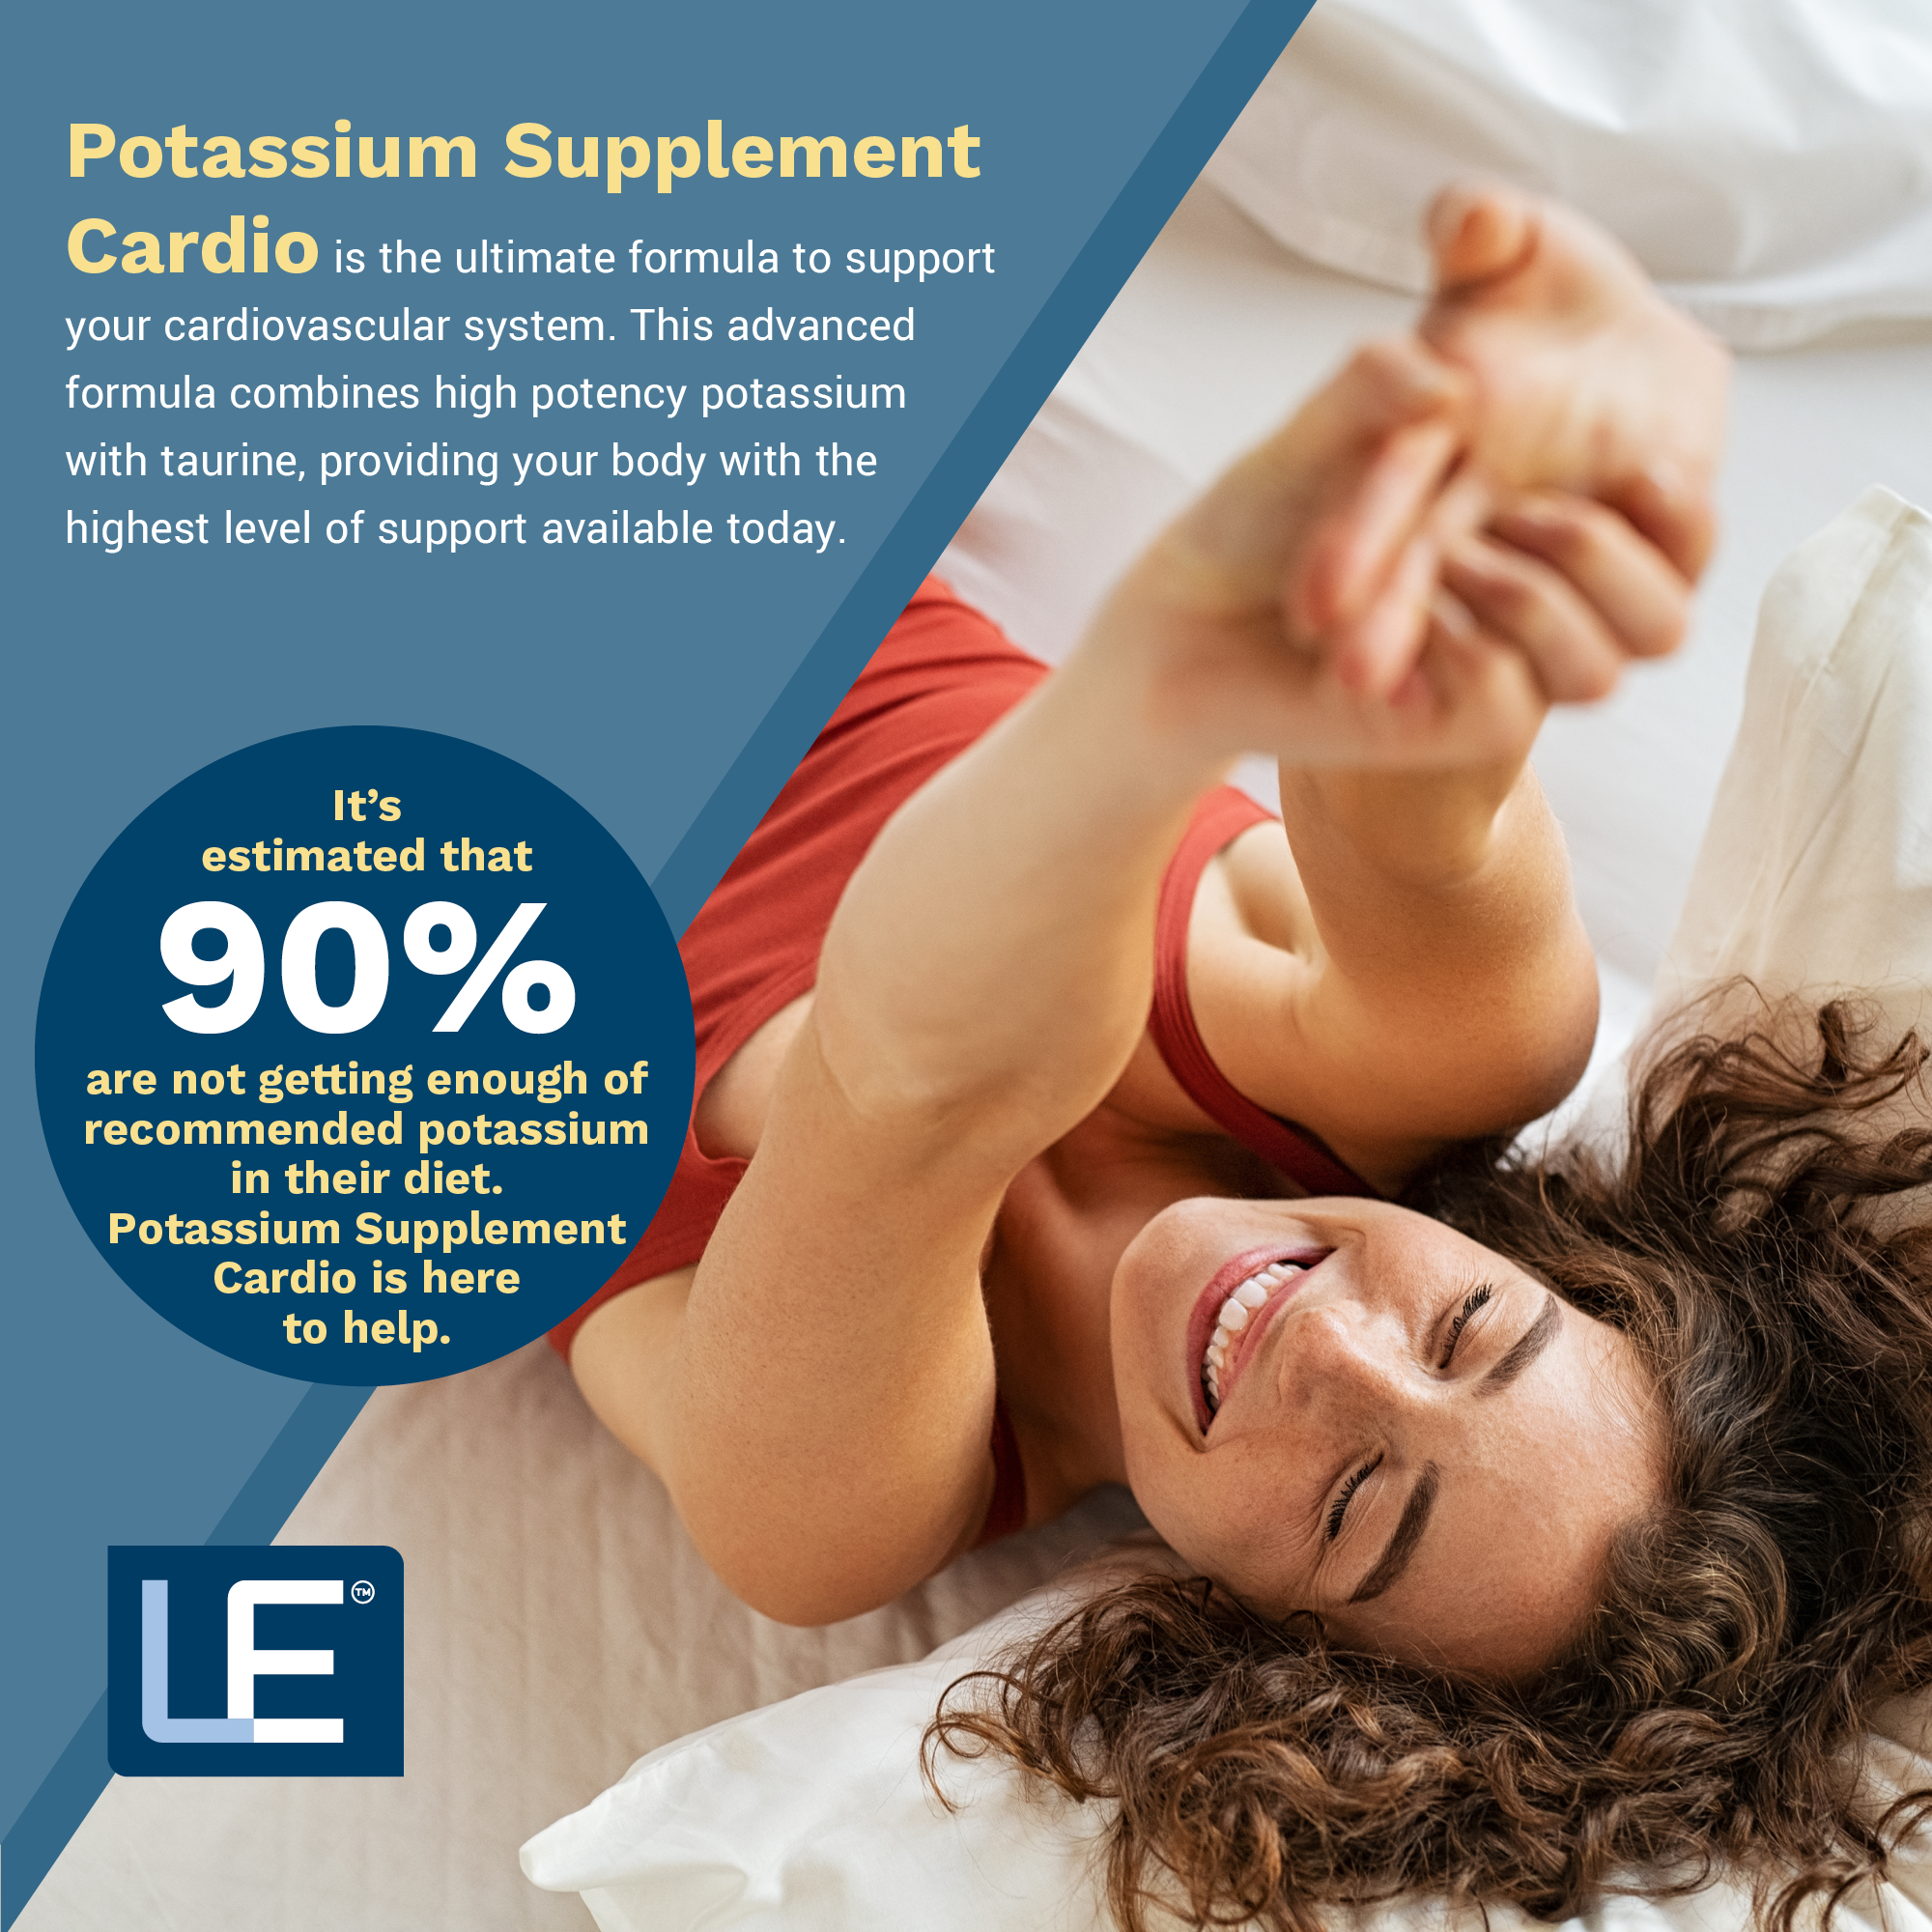 Potassium Supplement Cardio